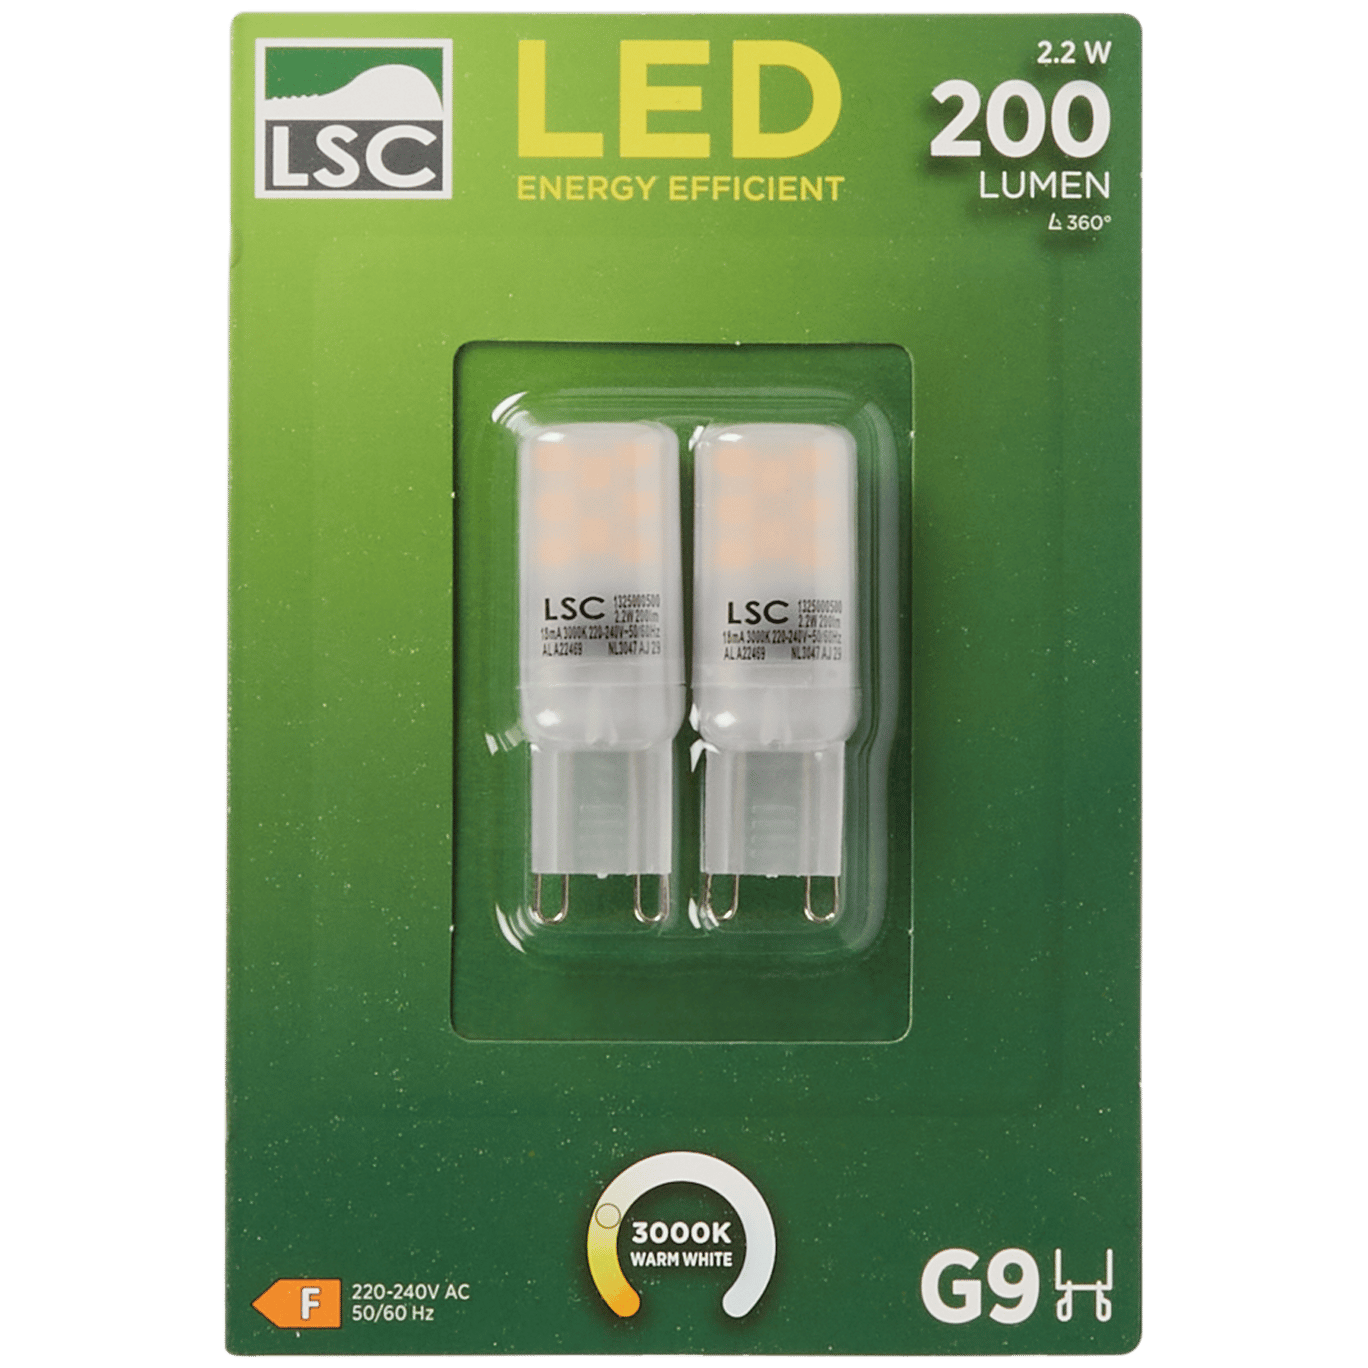 Luzes LED LSC